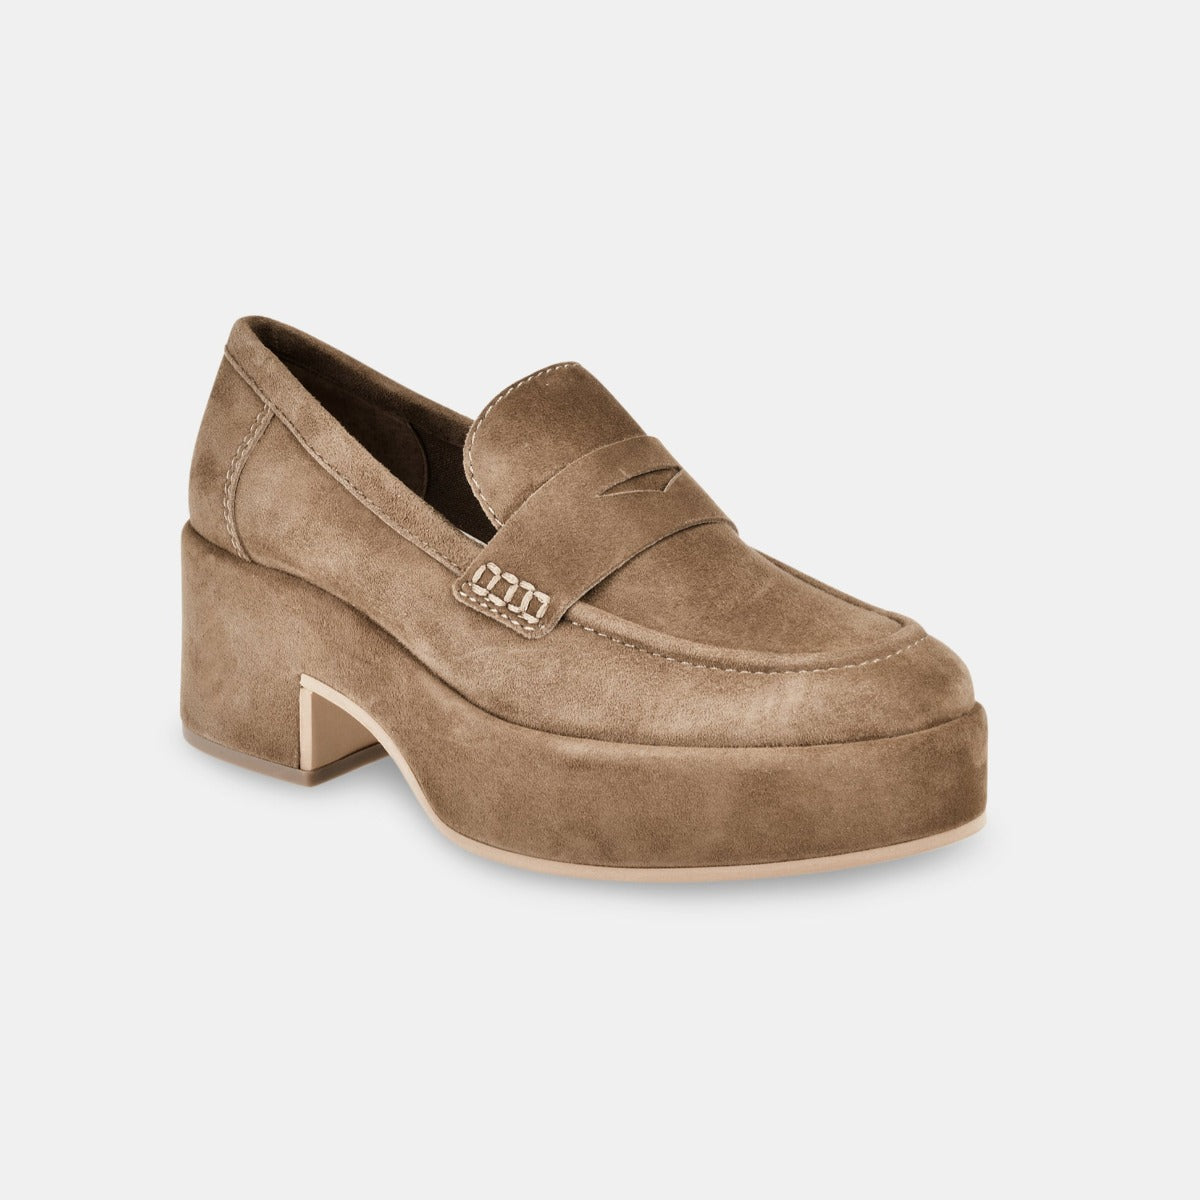 Yanni Shoe in Chesnut